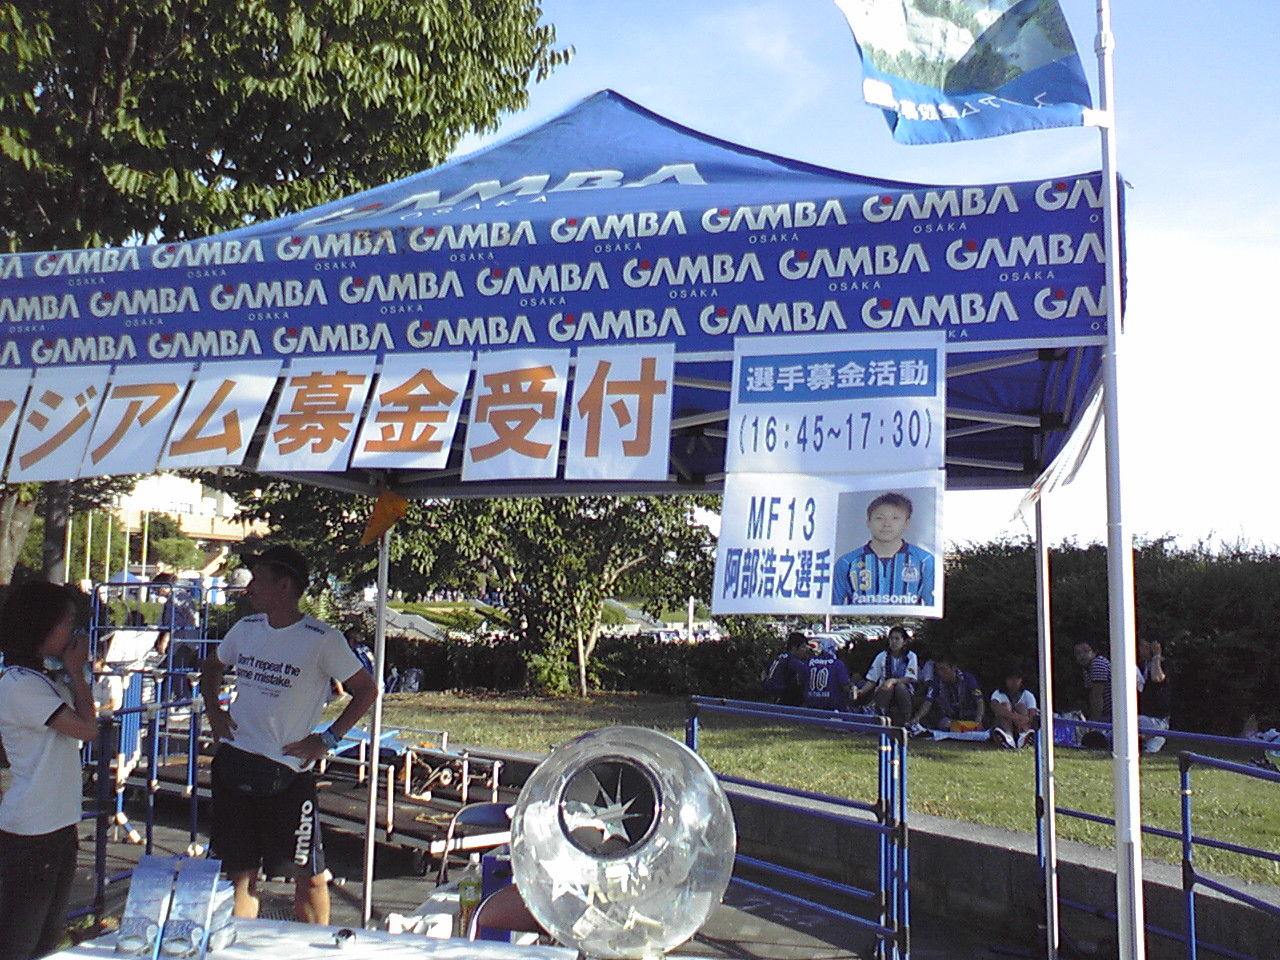 パナソニックキッズスクール スポーツフェスティバルにいってみた 13 8 18 ほくせつ青黒トピック ほくせつ青黒つーしん ほくつー ガンバ大阪でホームタウンを盛り上げるための情報サイト